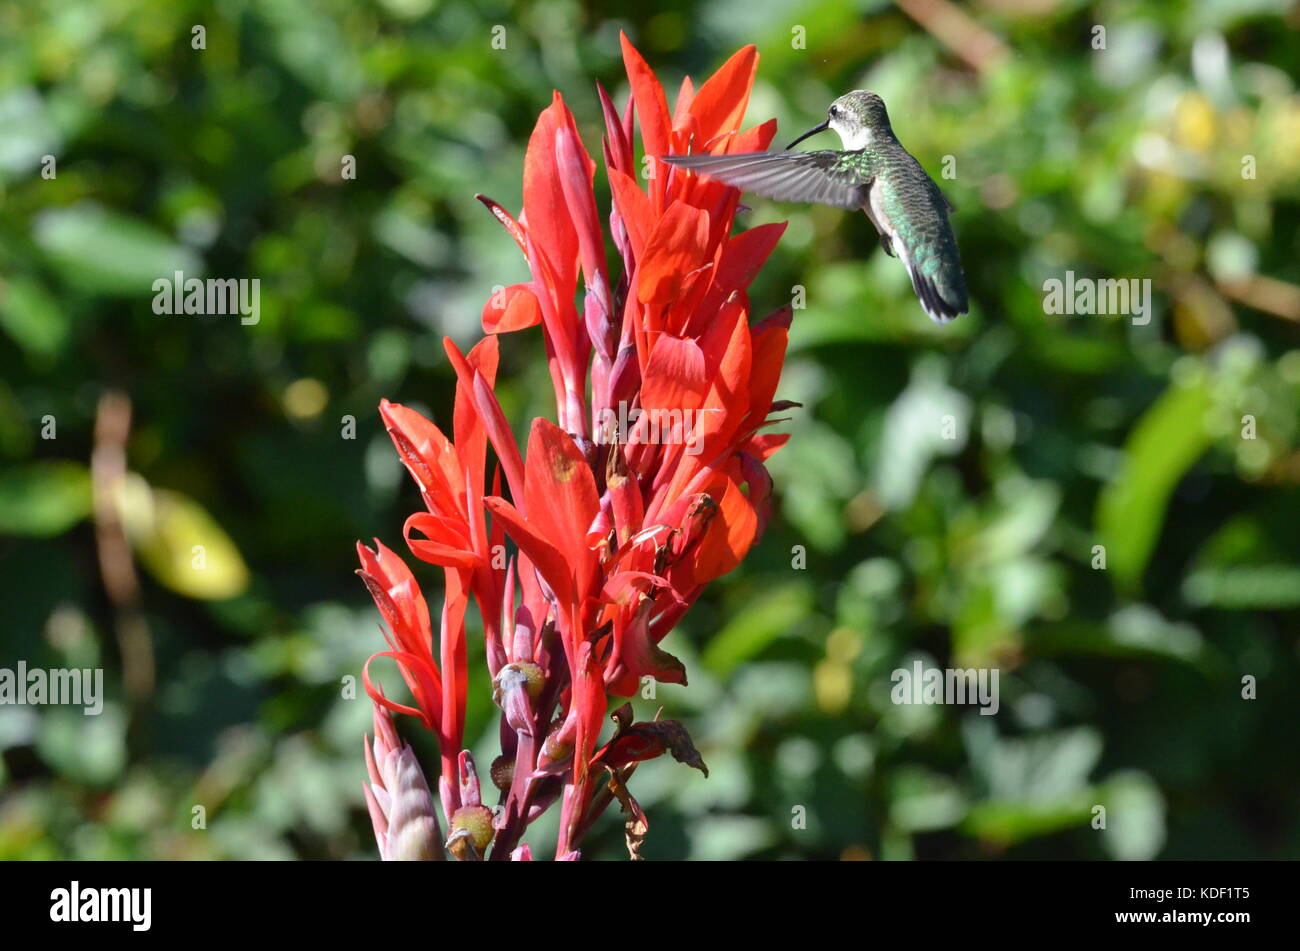 Hummingbird feeding on Canna lily nectar Stock Photo